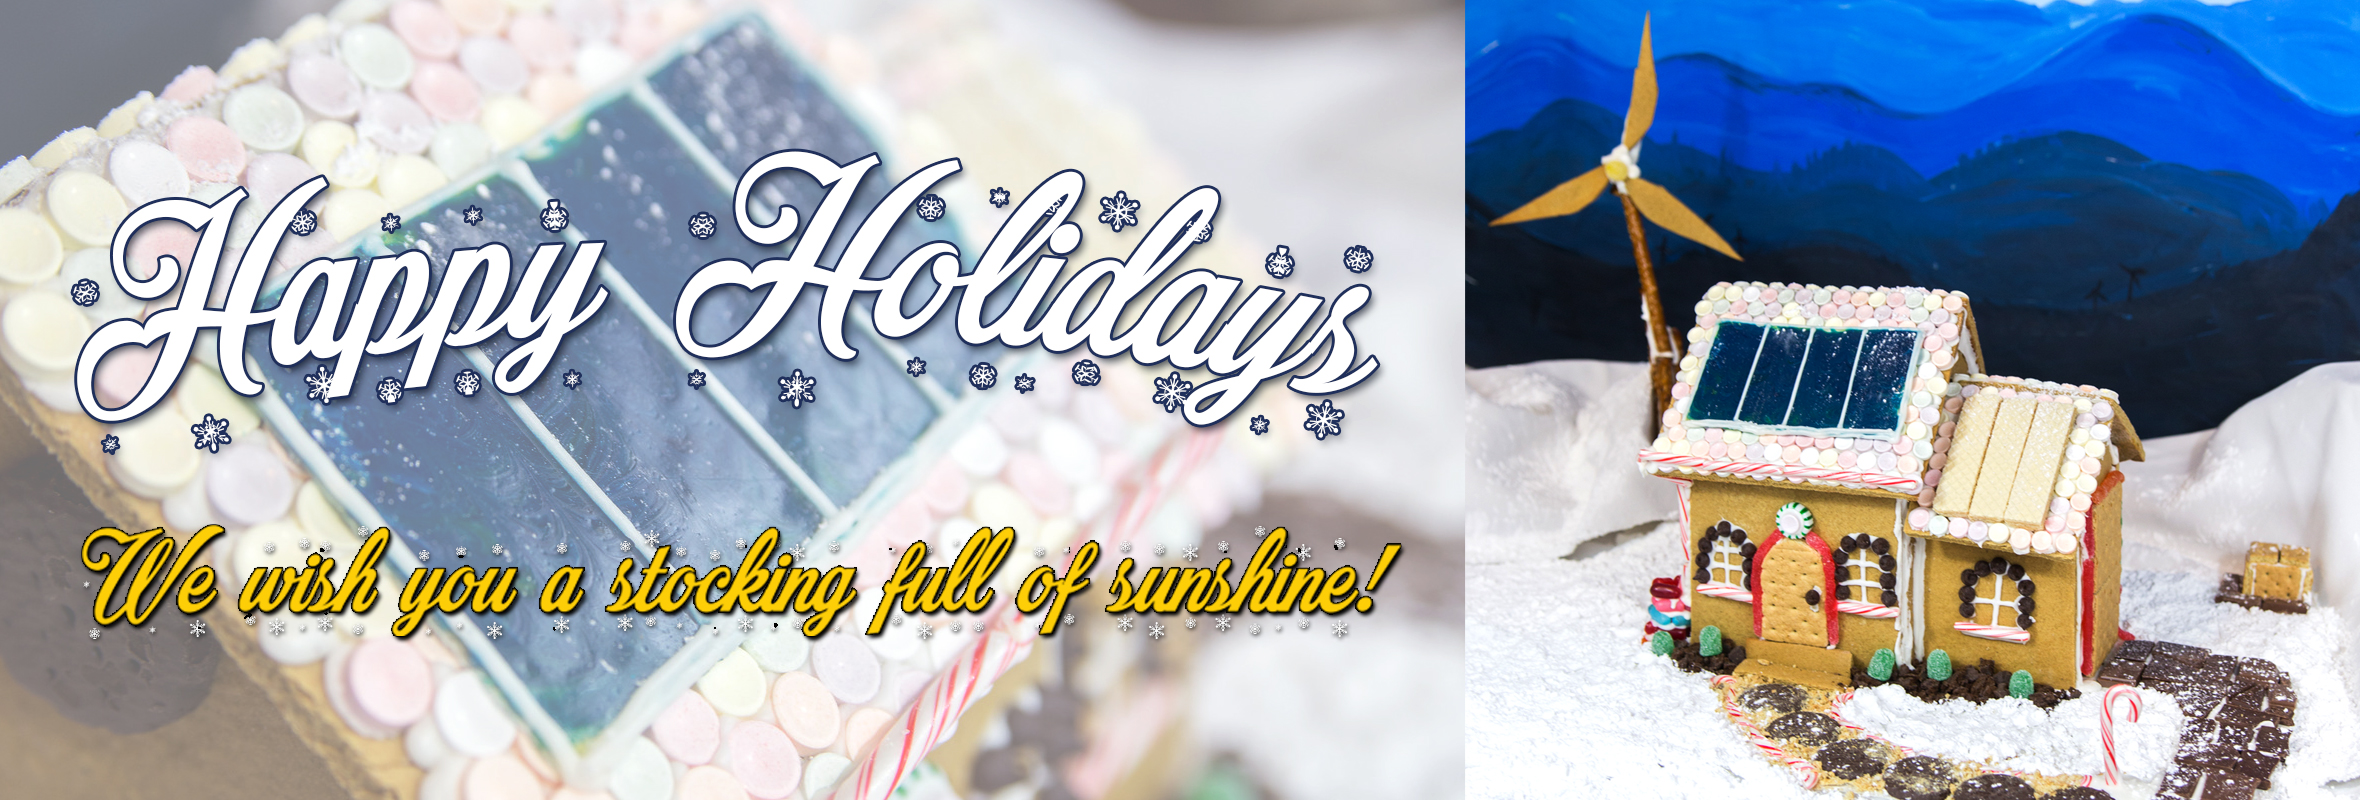 Happy Holidays! We wish you a stocking full of sunshine!